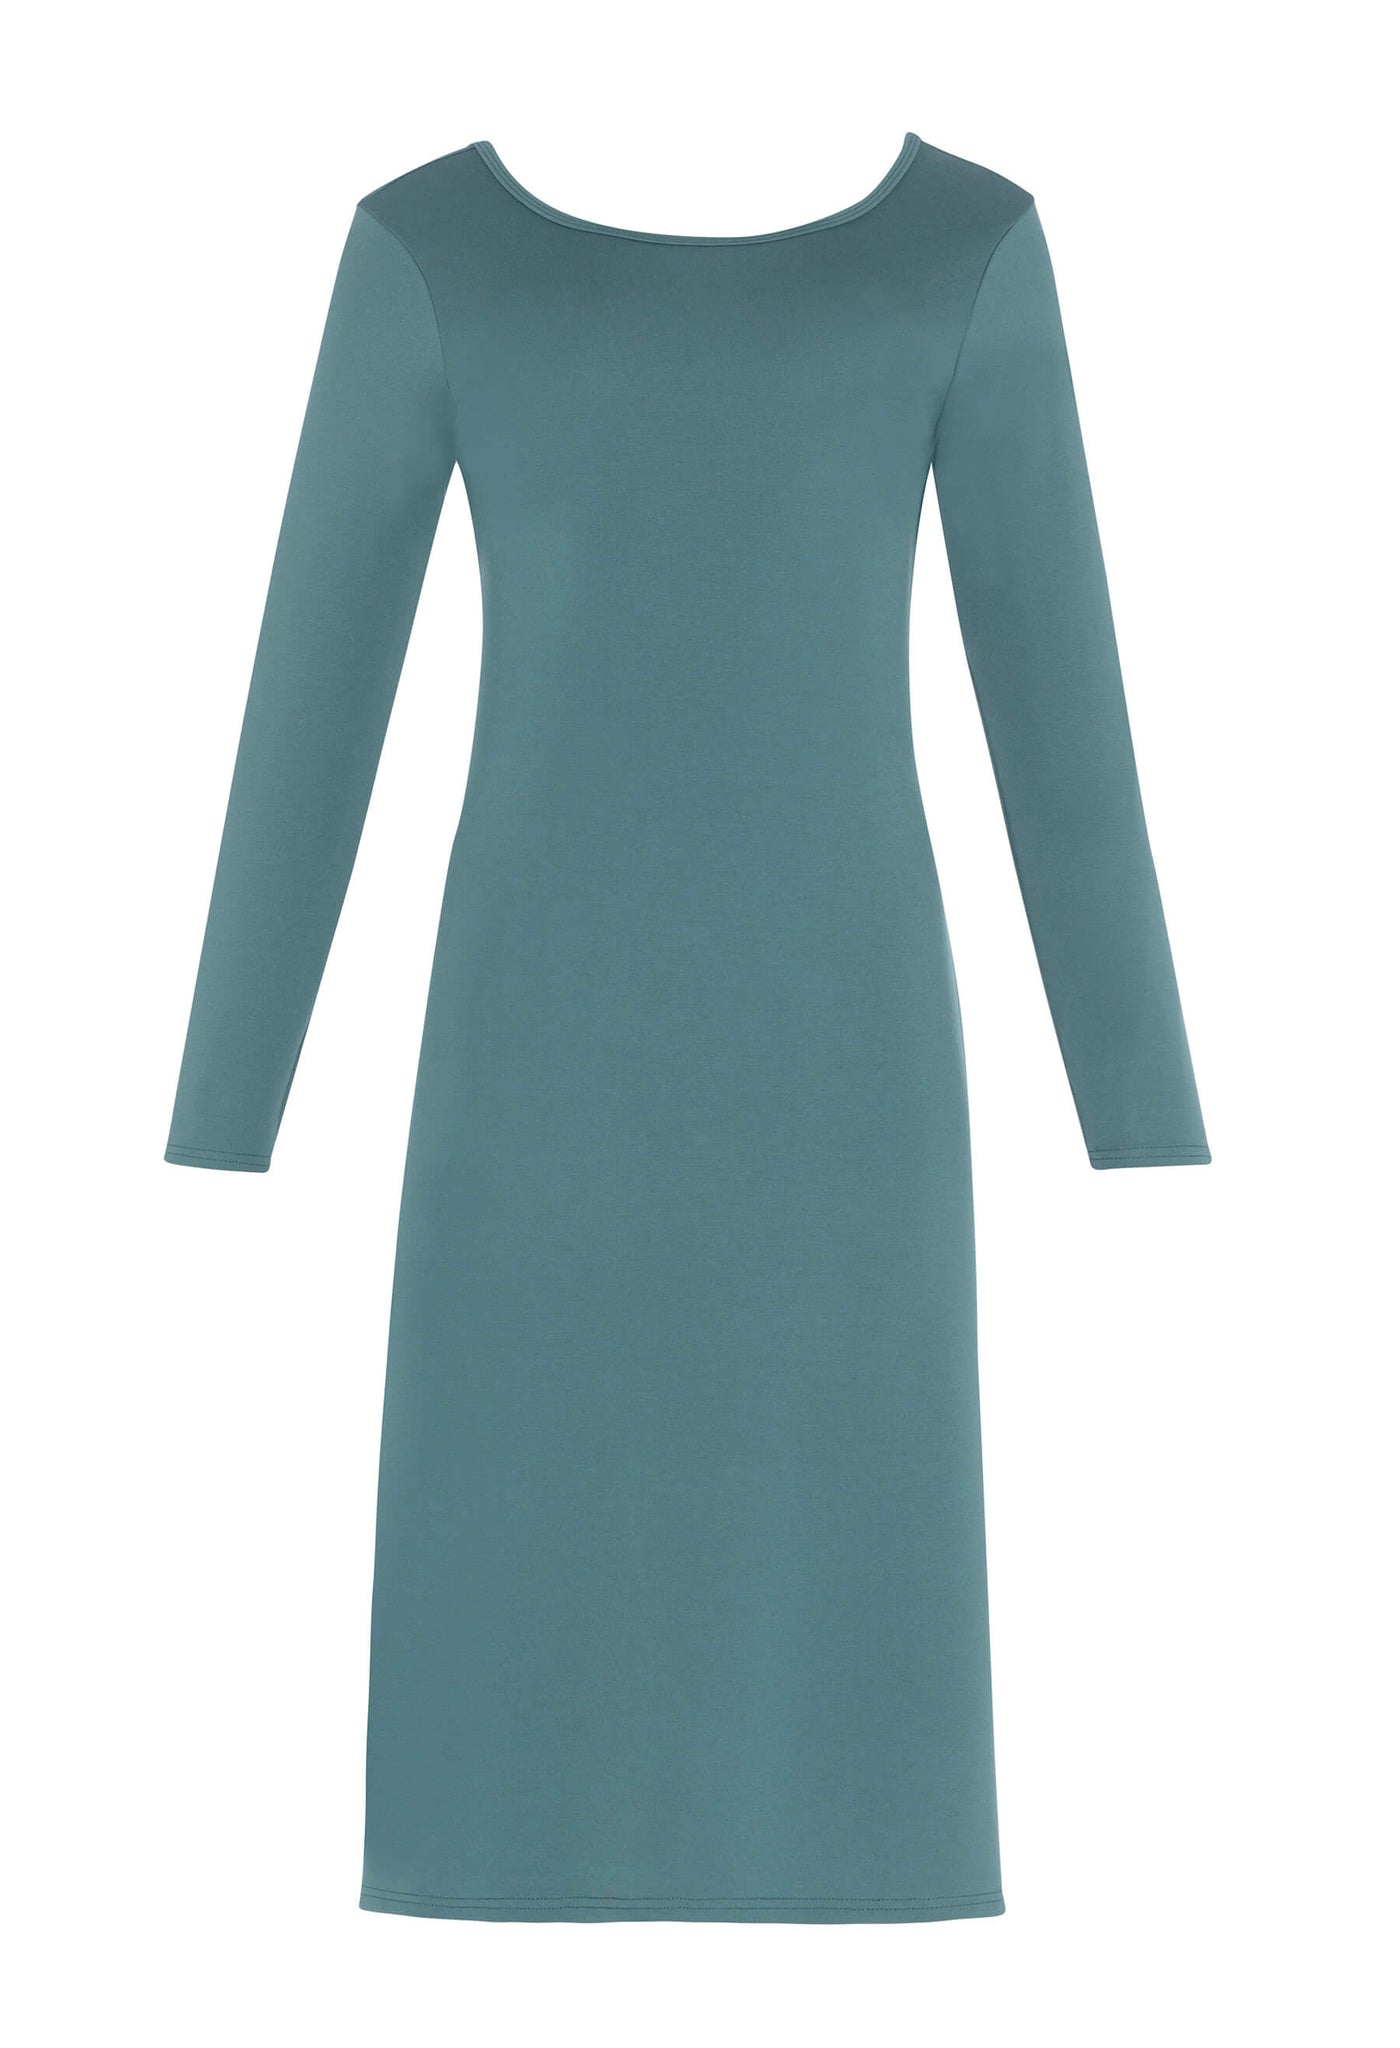 Découvrez la robe noire Amalia conçue par Katy St-Laurent. Cette robe bleue de longueur midi est élégante et offre un look raffiné.